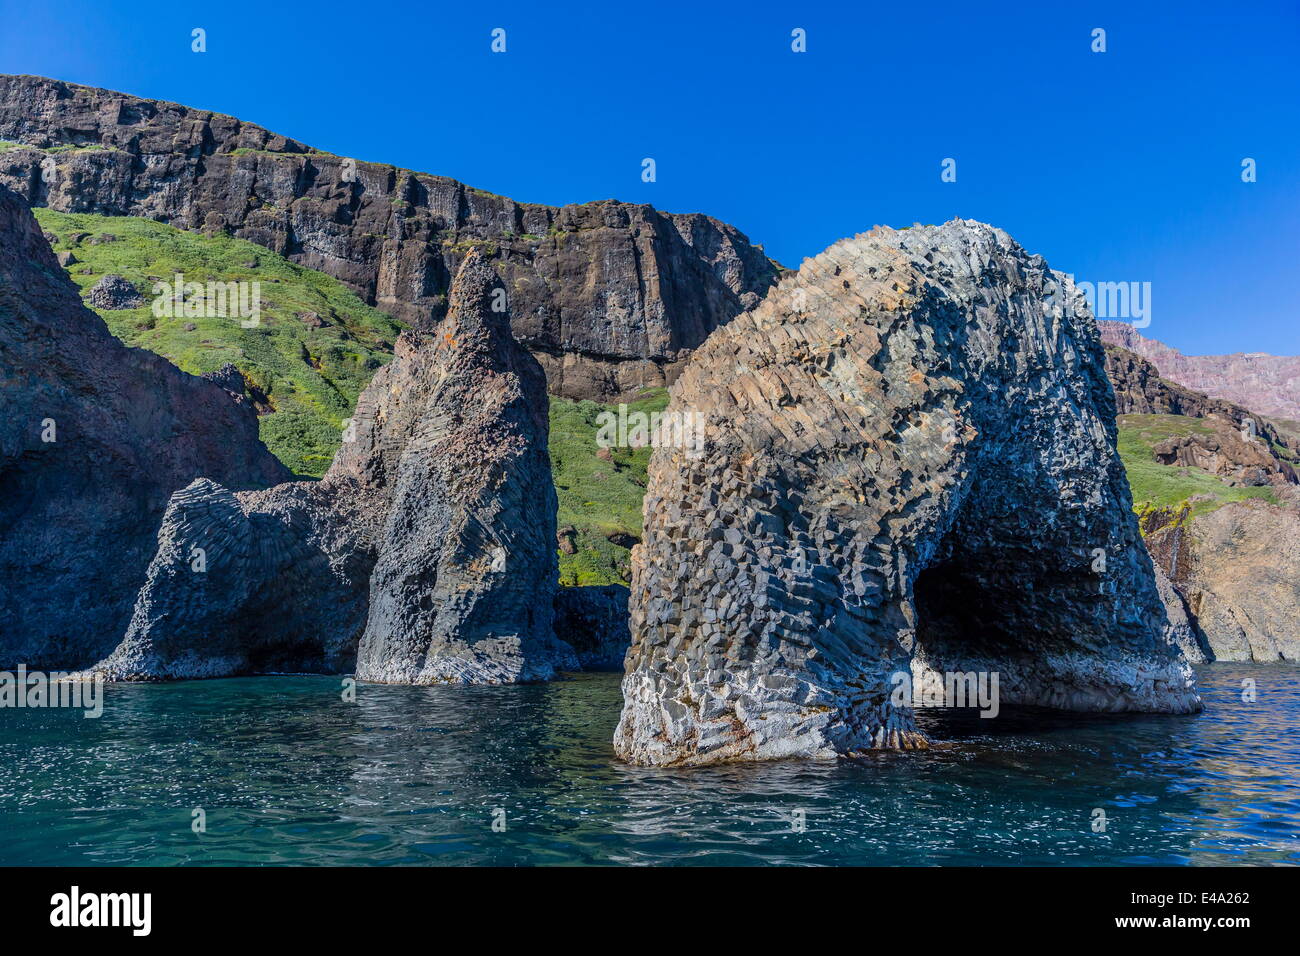 Arco de basalto columnar en la costa sur de la isla de Disko, Kuannersuit, Groenlandia, las regiones polares Foto de stock